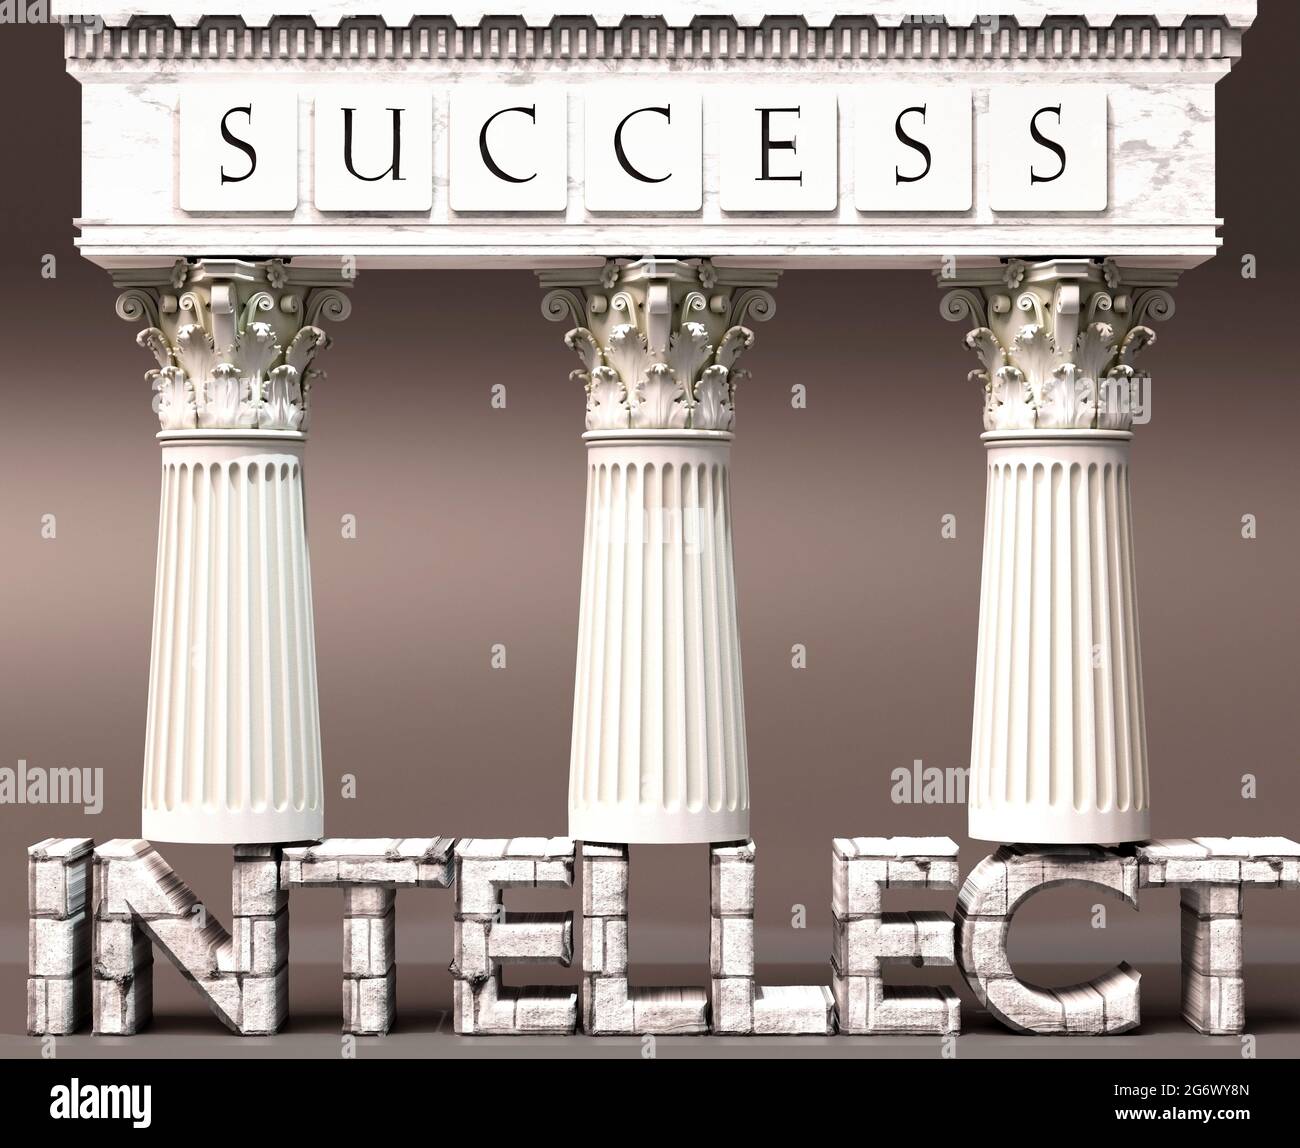 L'intellect comme fondement du succès - symbolisé par les piliers du succès soutenus par l'intellect pour montrer qu'il est essentiel pour atteindre des buts et de l'ach Banque D'Images